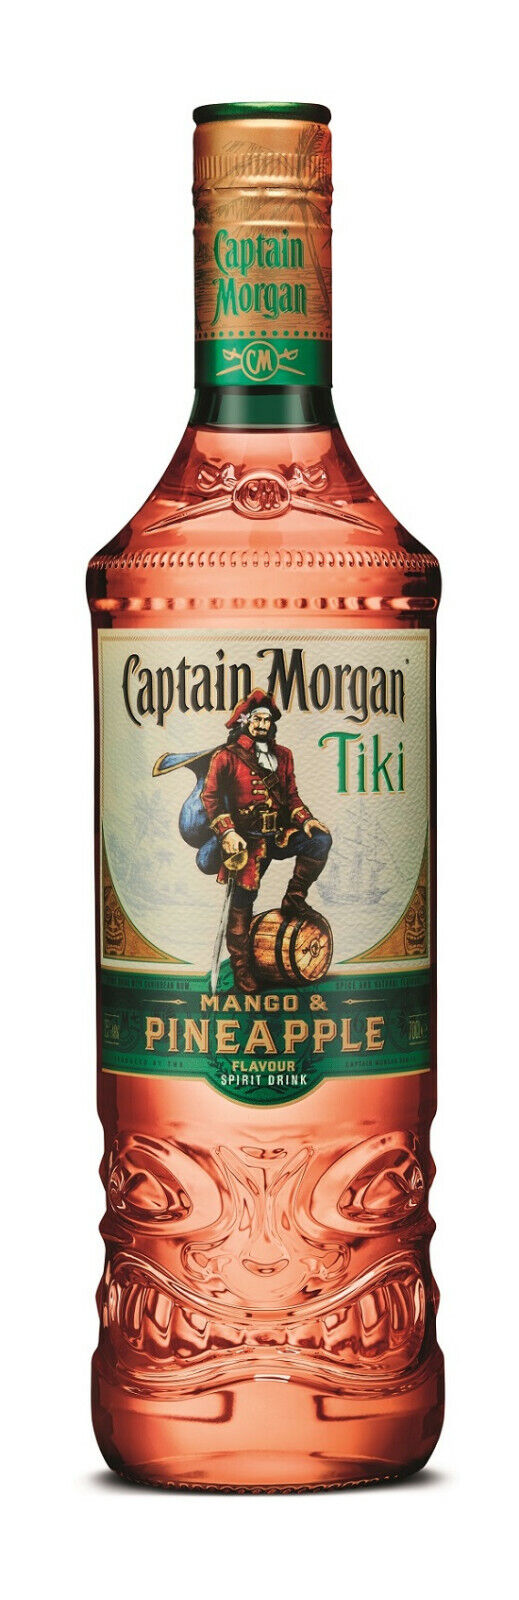 28,56€/l Captain Morgan Tiki Mango & Pineapple Spirit Drink 0,7 Liter  5000281060941 | eBay